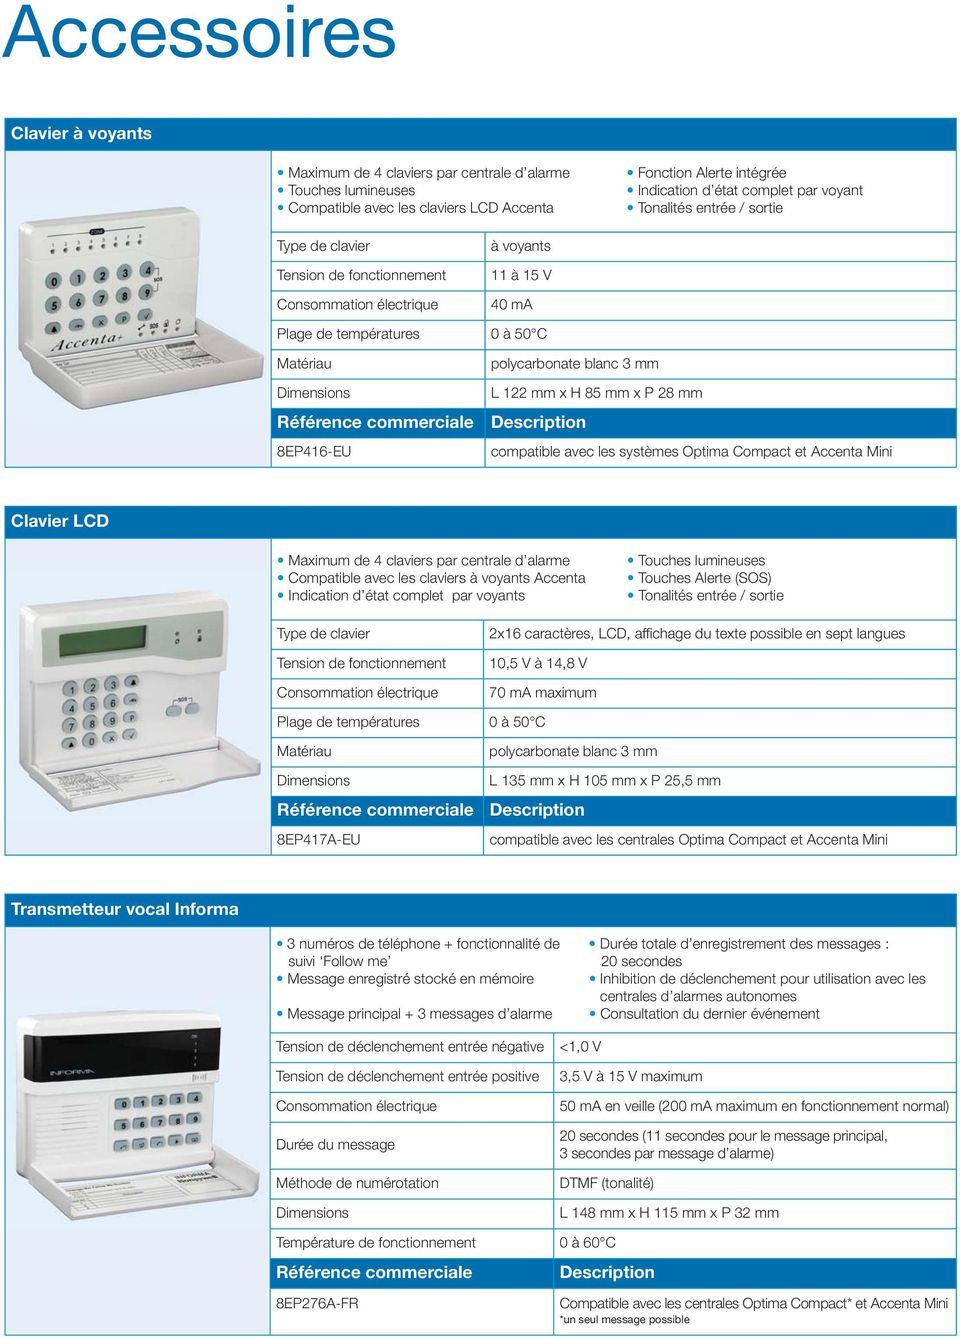 8EP416-EU polycarbonate blanc 3 mm L 122 mm x H 85 mm x P 28 mm Description compatible avec les systèmes Optima Compact et Accenta Mini Clavier LCD Maximum de 4 claviers par centrale d alarme